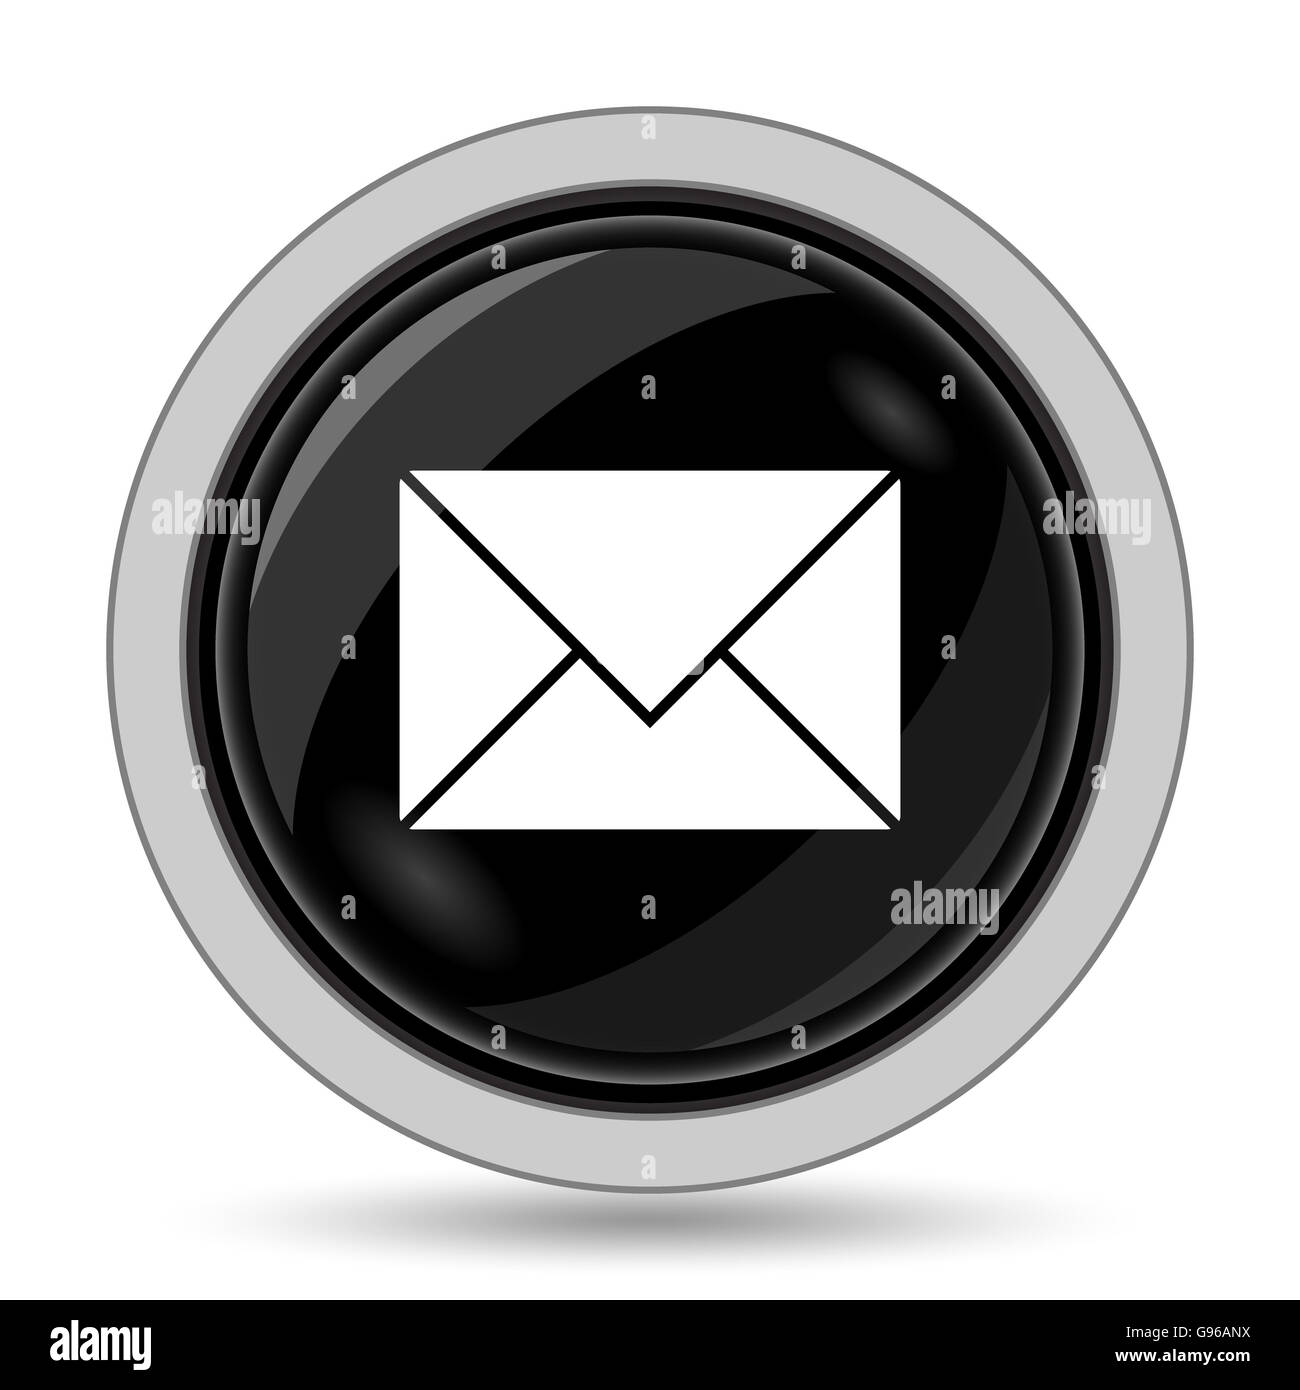 E-mail icon. Internet button on white background. Stock Photo